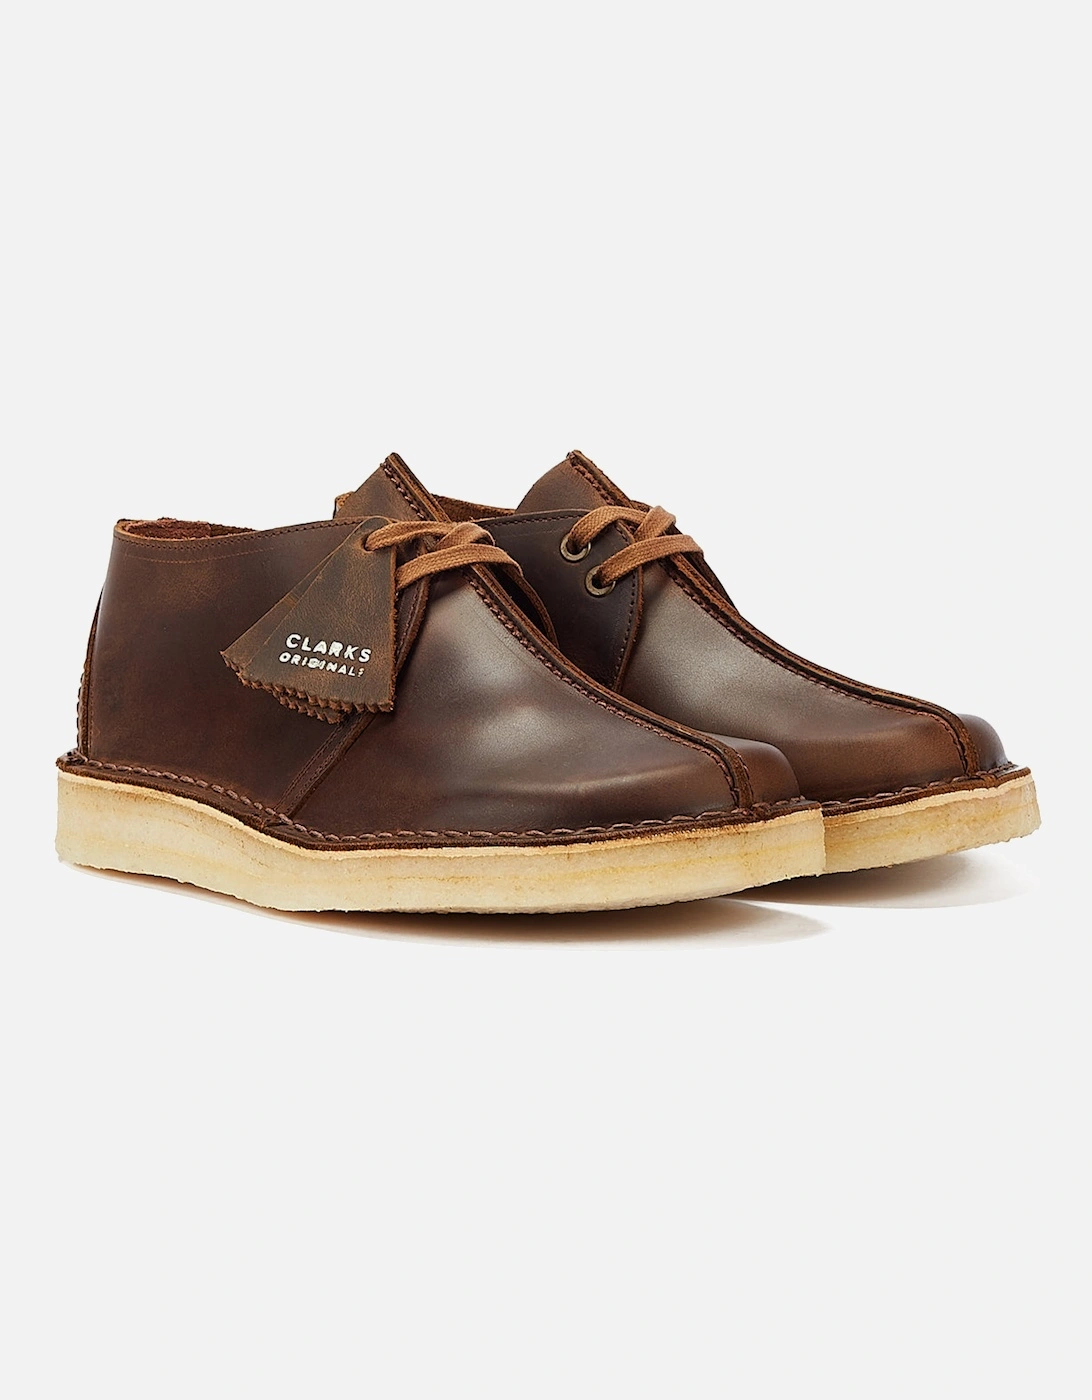 Originals Desert Trek Leather Mens Beeswax Brown Shoes, 9 of 8